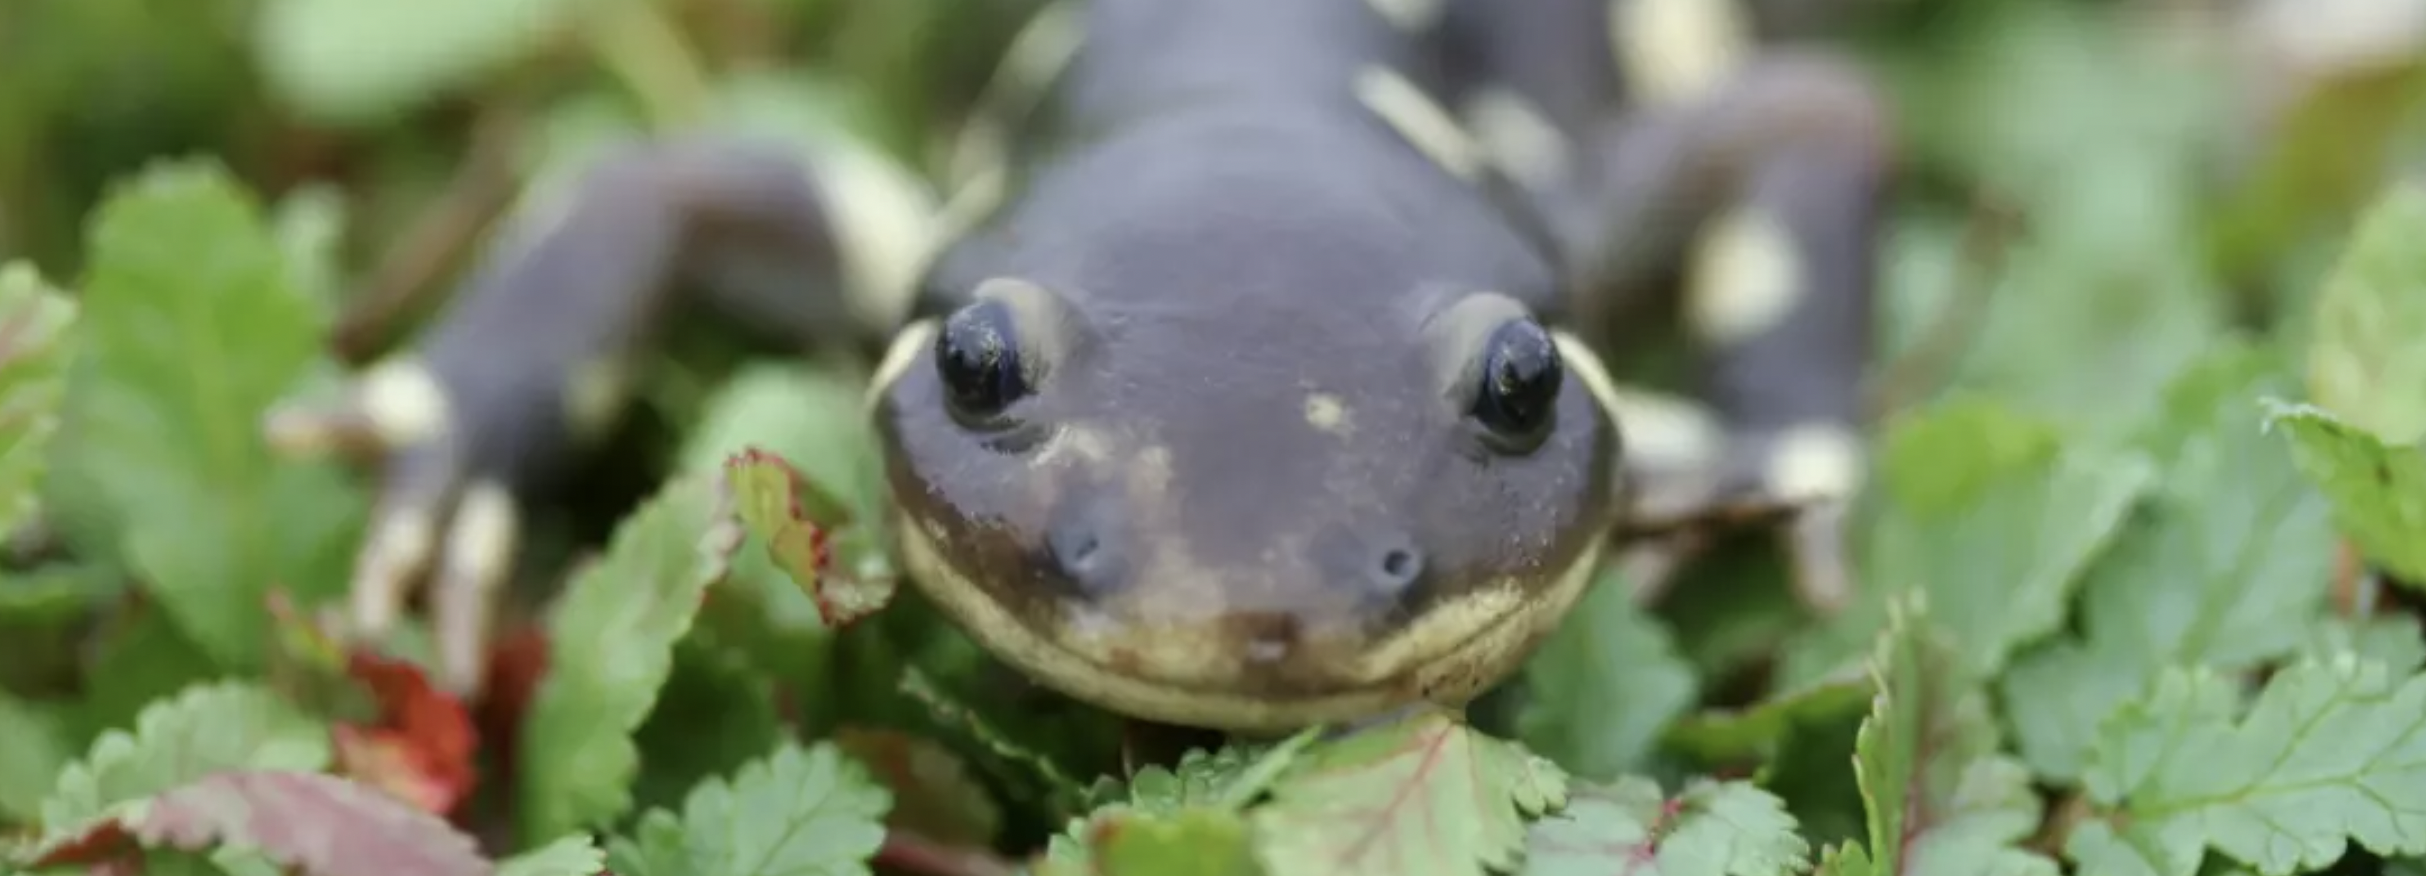 A salamander creeps through groundcover